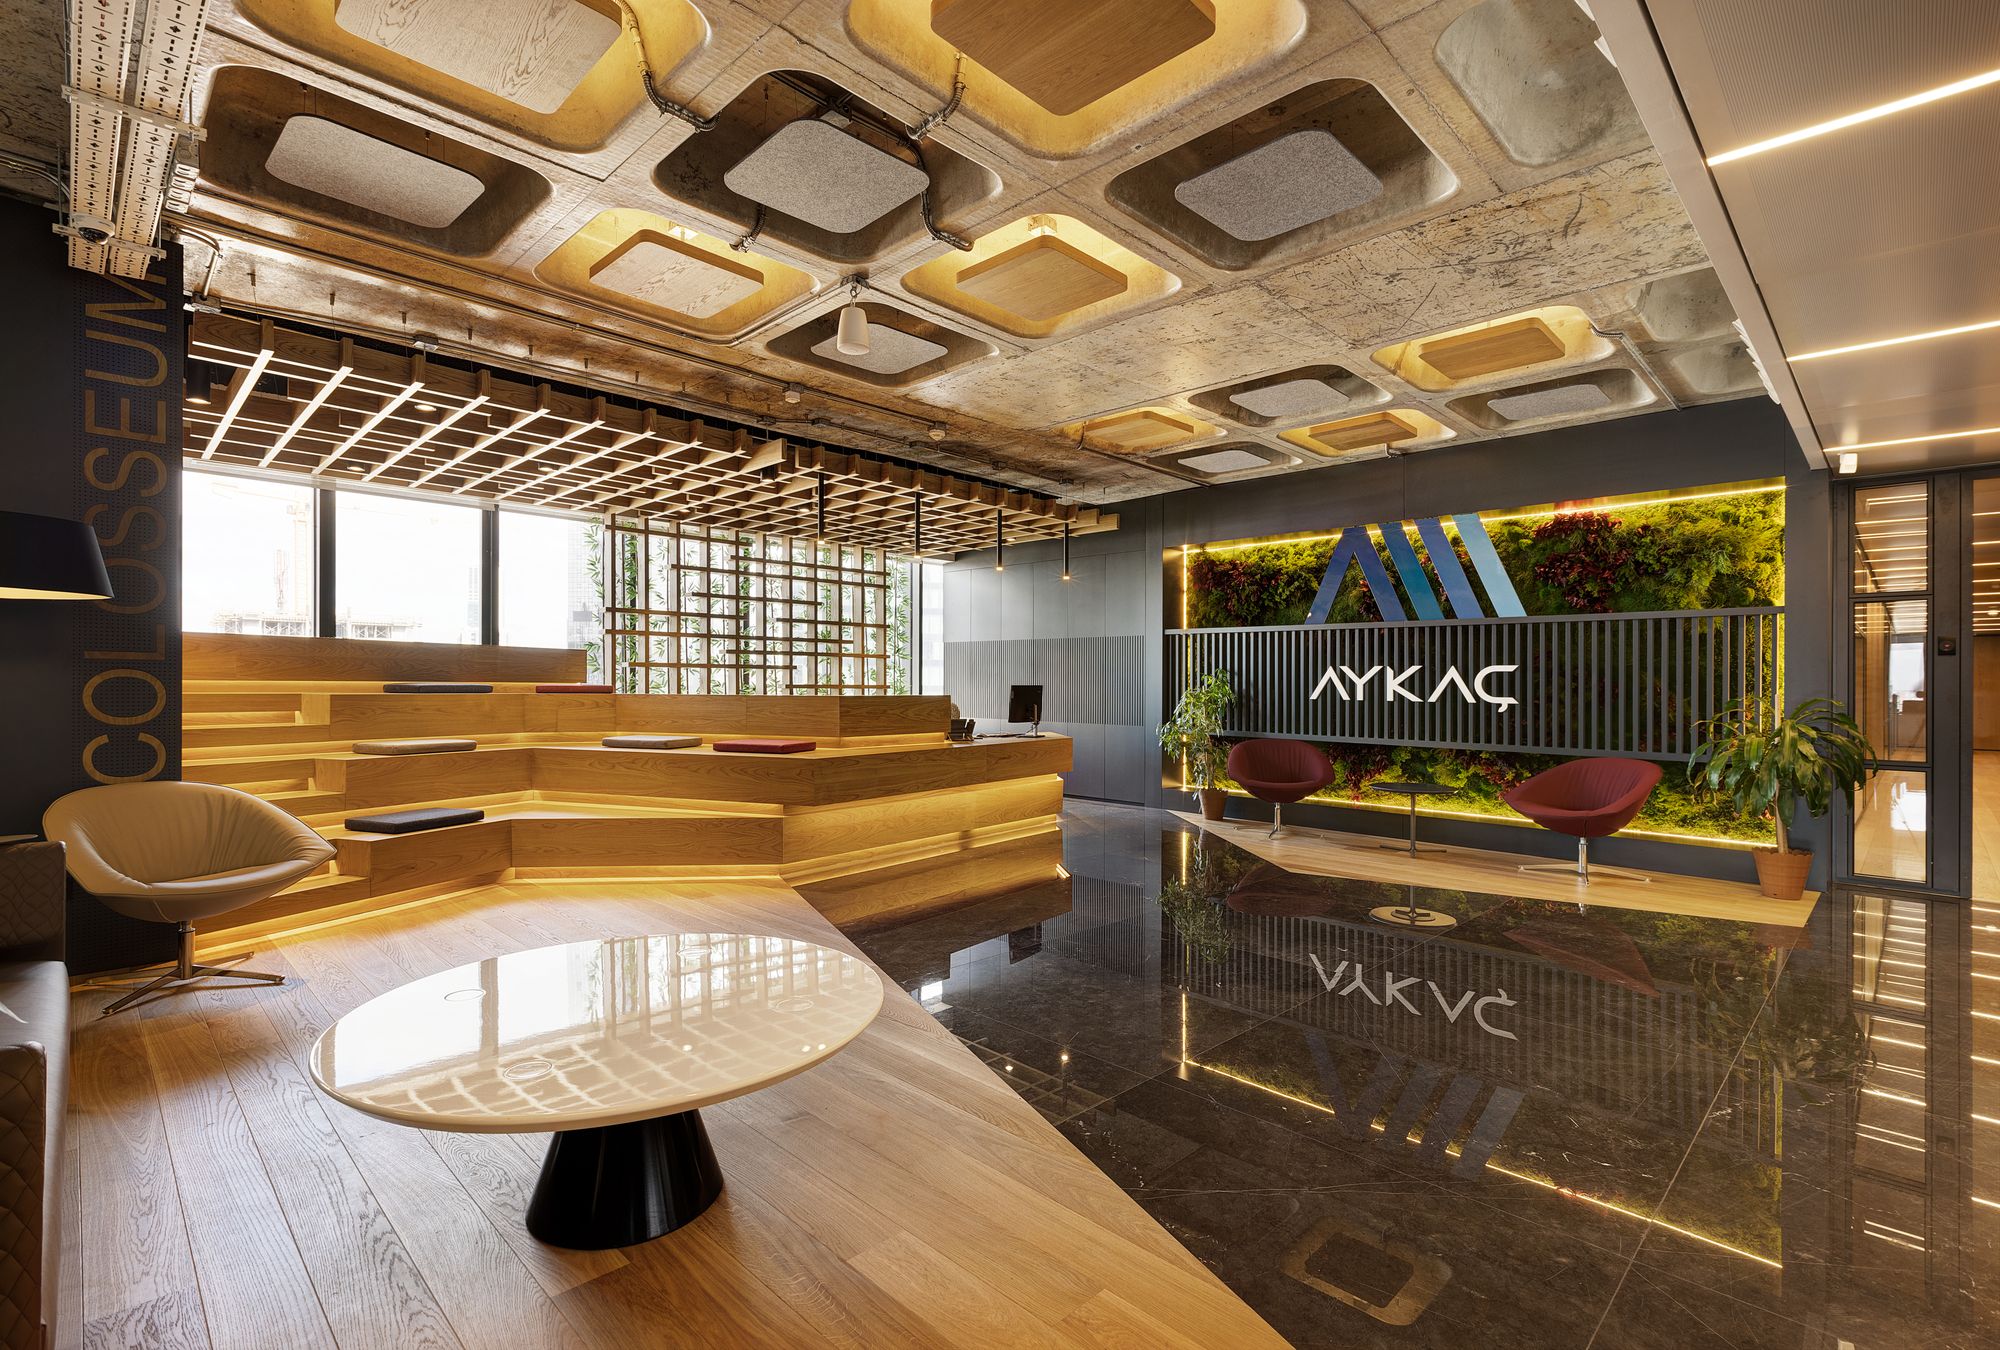 Aykaç伊斯坦布尔办事处|ART-Arrakis | 建筑室内设计的创新与灵感